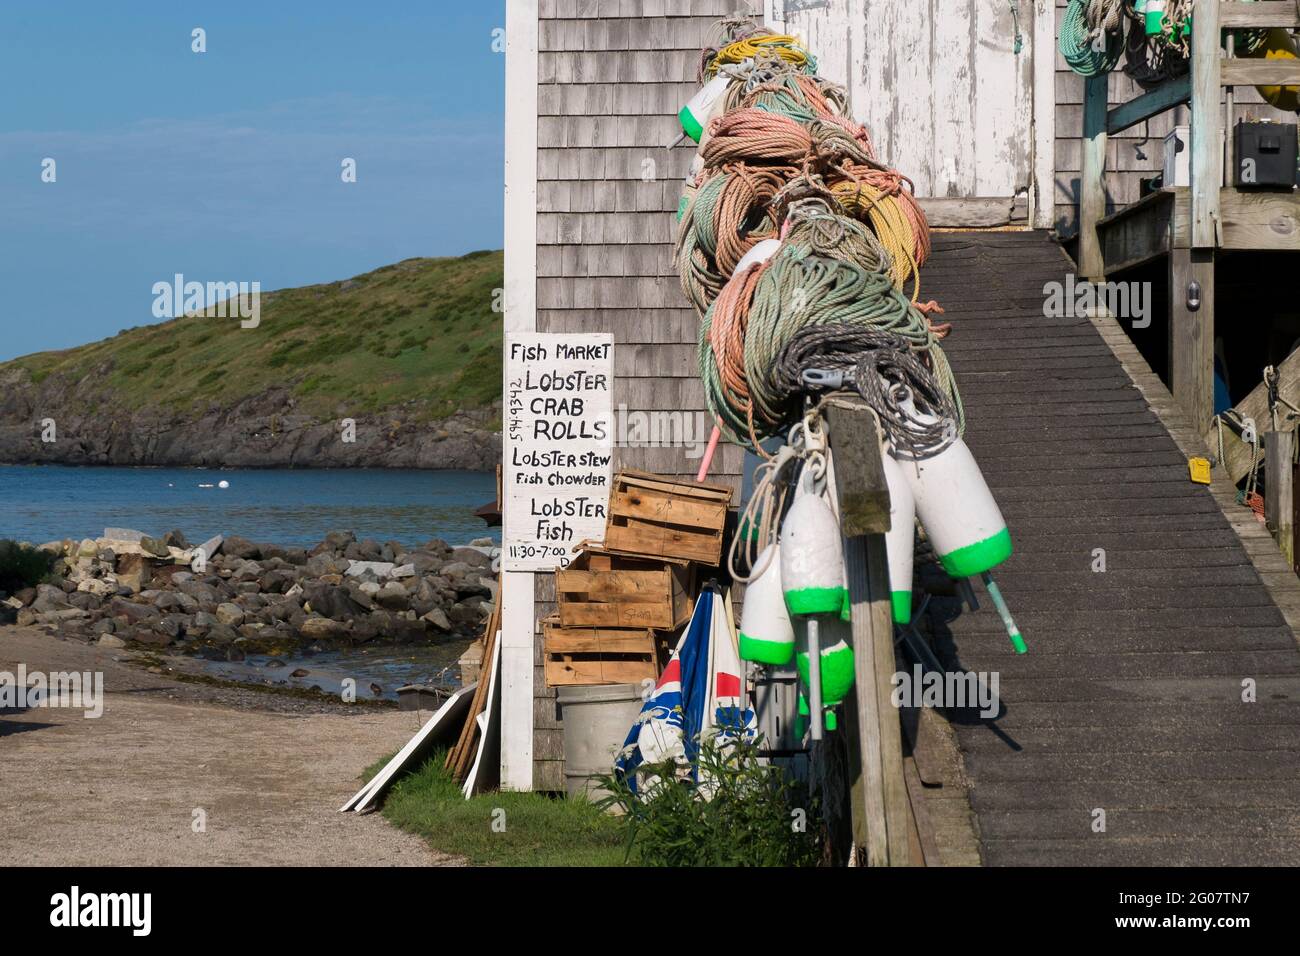 Ein handbemaltes, schriftliches Schild für den Fischmarkt mit den Tagesangeboten - Hummer, Krabbenrolle, Fischsuppe. Auf der Monhegan Insel in Maine. Stockfoto